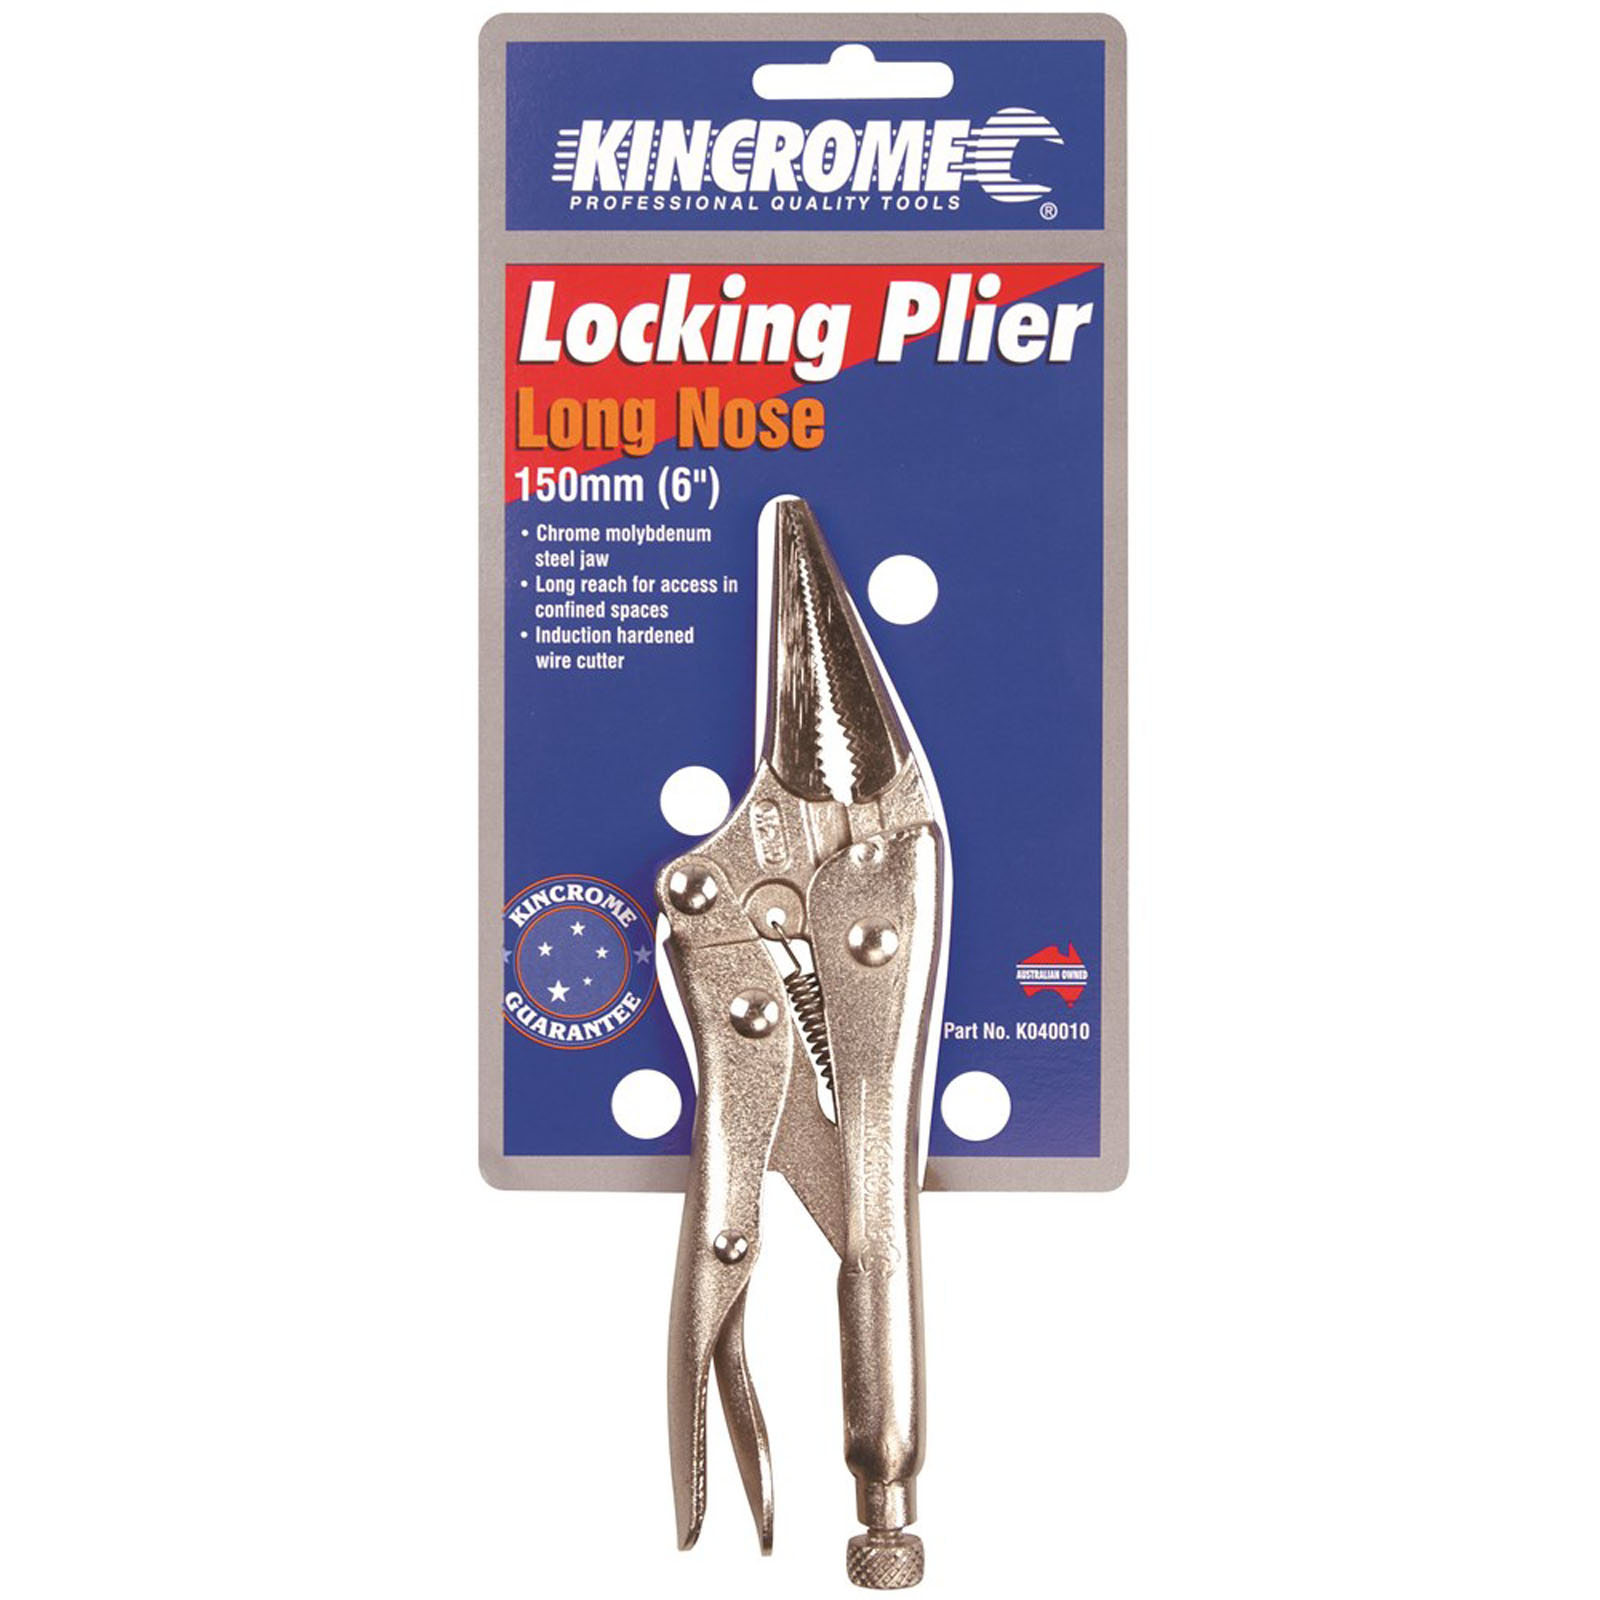 Locking Pliers Long Nose 150mm (6